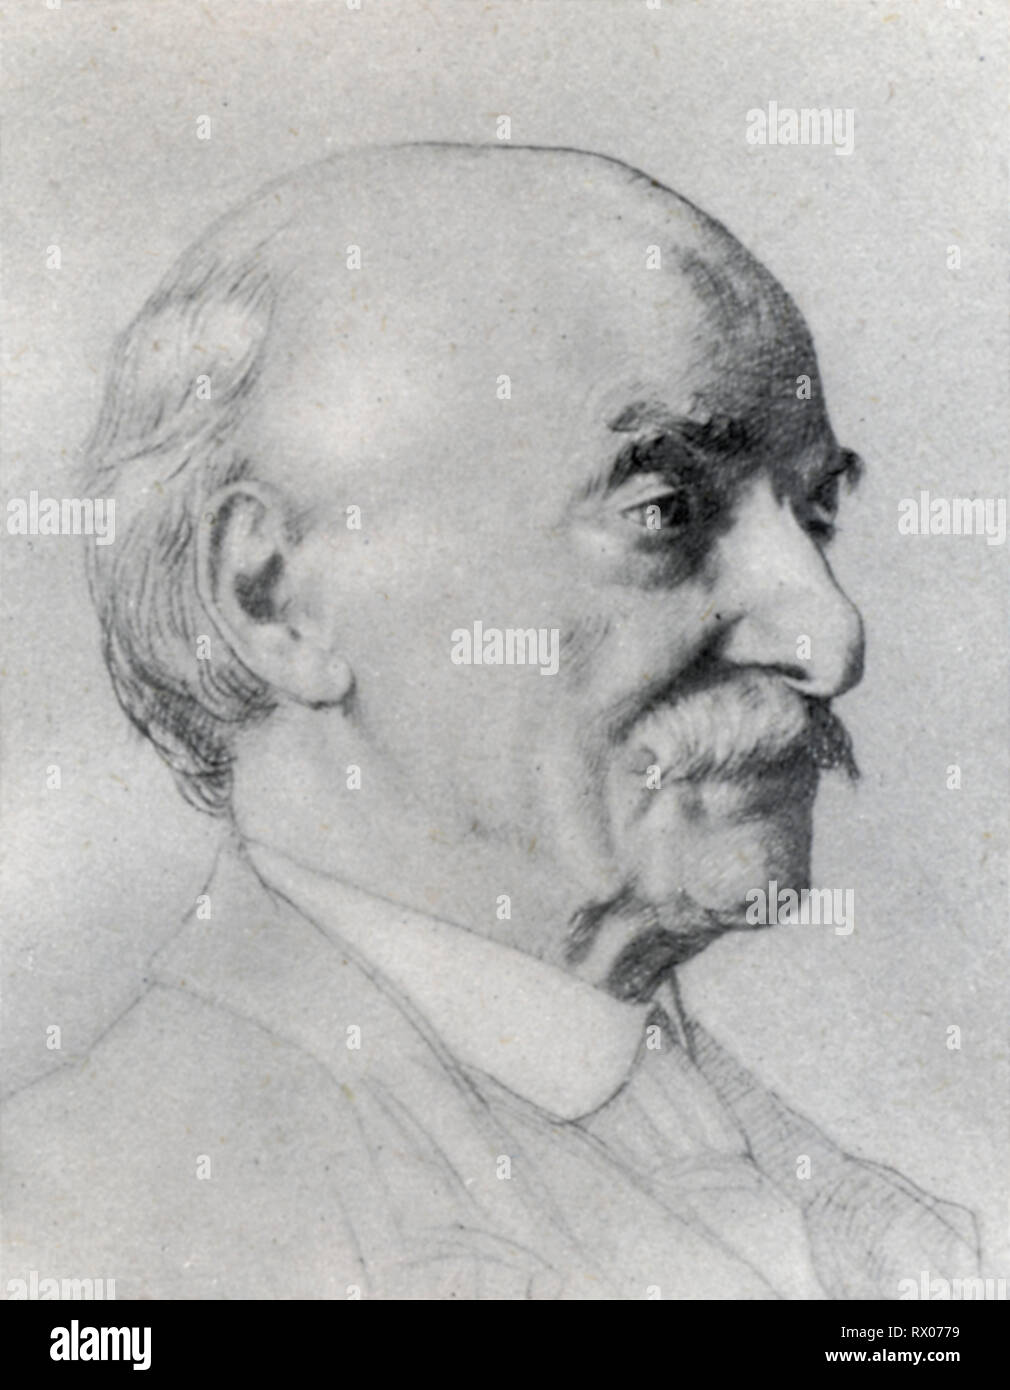 Thomas Hardy (1840-1928), c1910. By William Strang (1859-1921). Thomas Hardy (1840-1928), English novelist and poet. Stock Photo